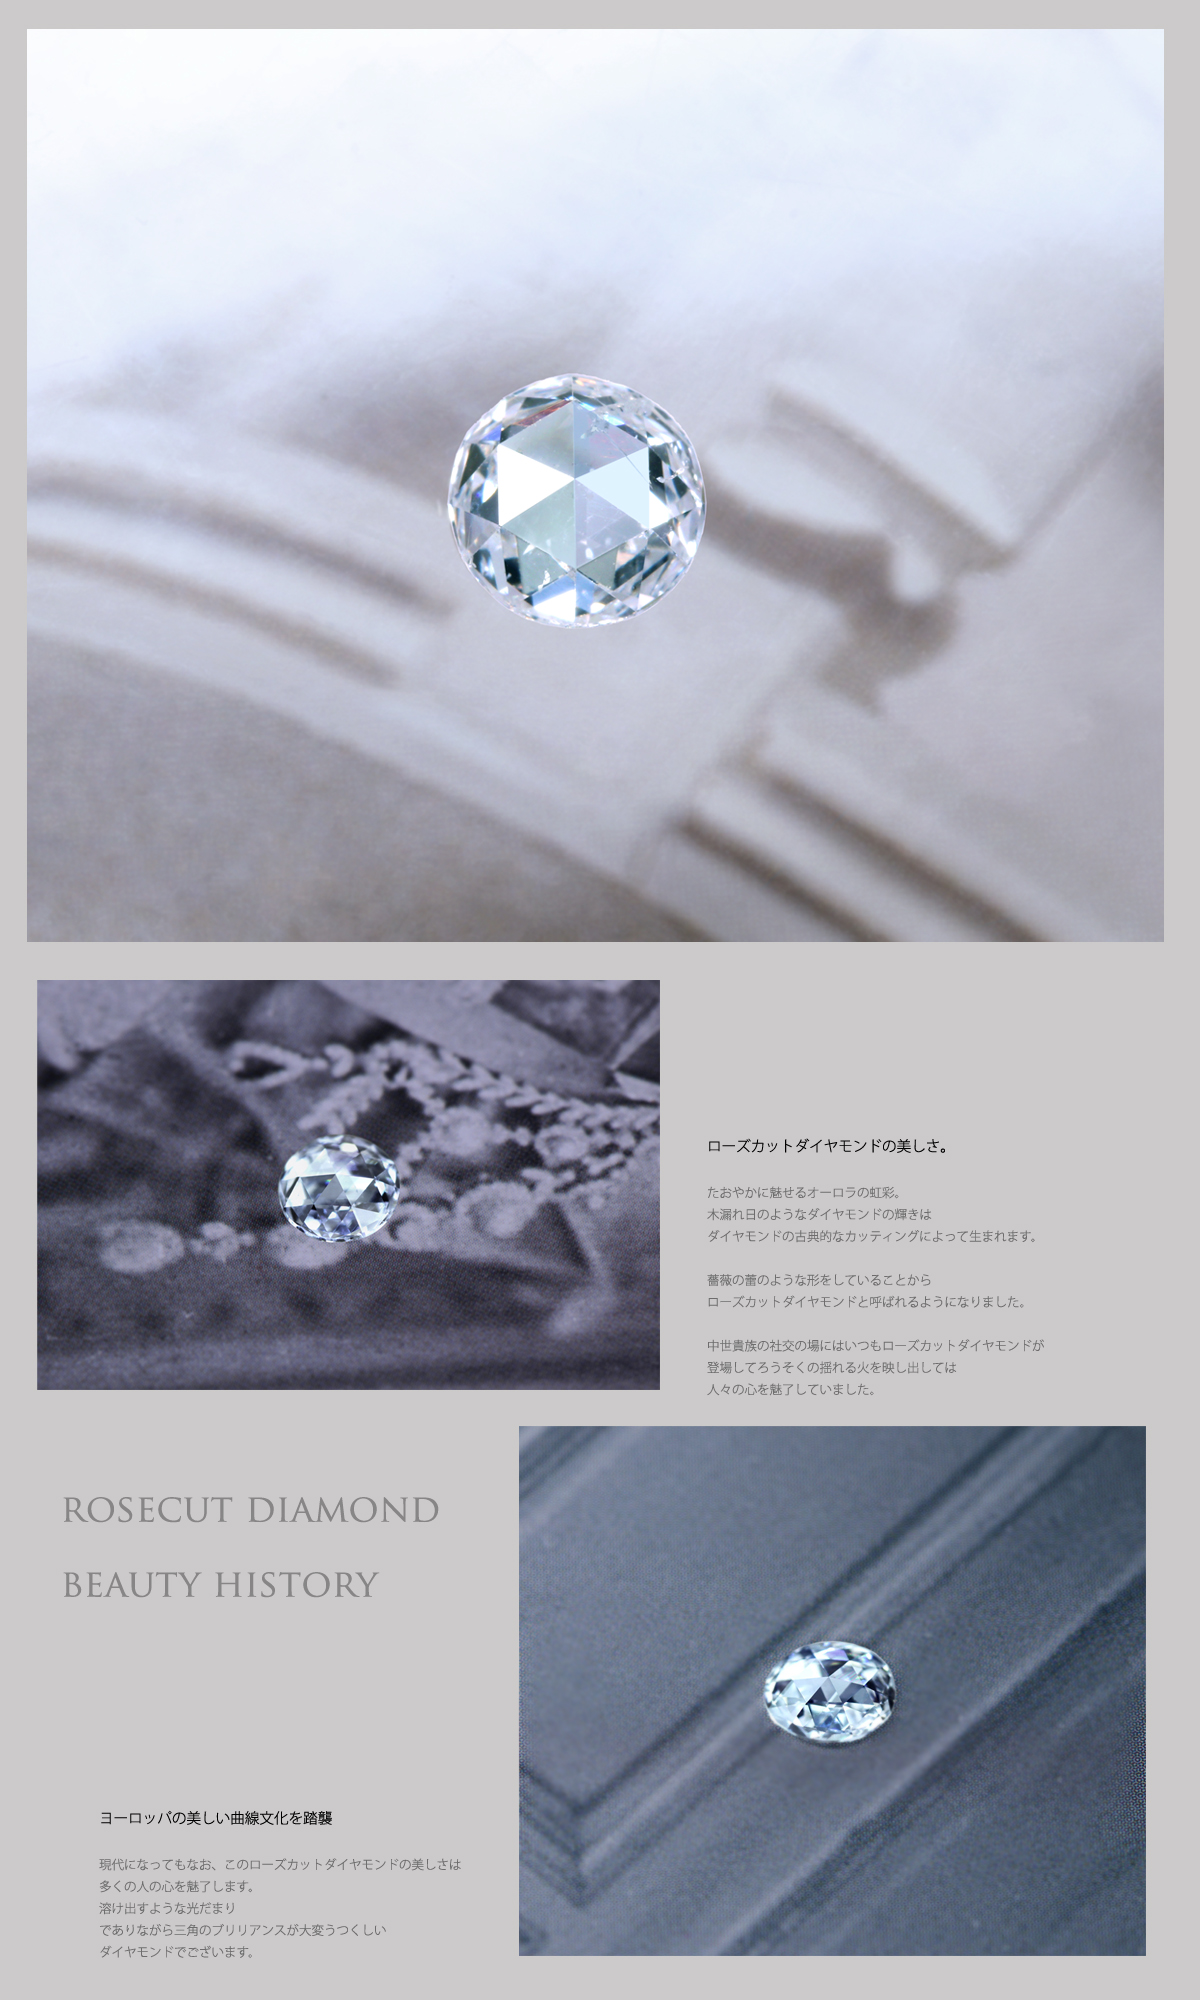 中世の貴族を魅了したローズカットダイヤモンド k18WG